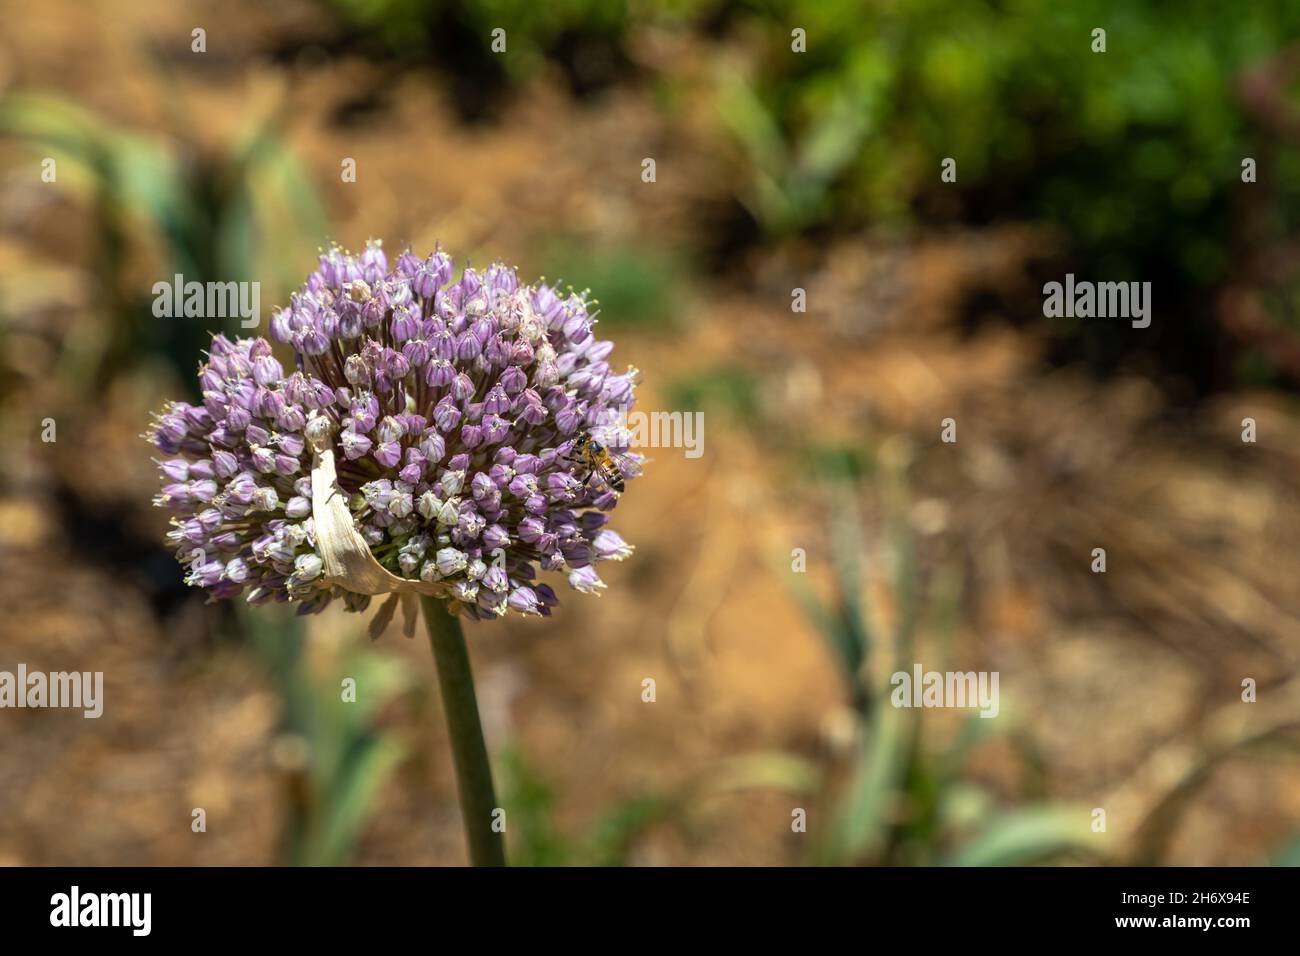 Selektiver Fokus, Nahaufnahme, auf eine Blume einer Knoblauchpflanze und einer Biene. Die Biene ist damit beschäftigt, die Blume zu bestäuben. Stockfoto